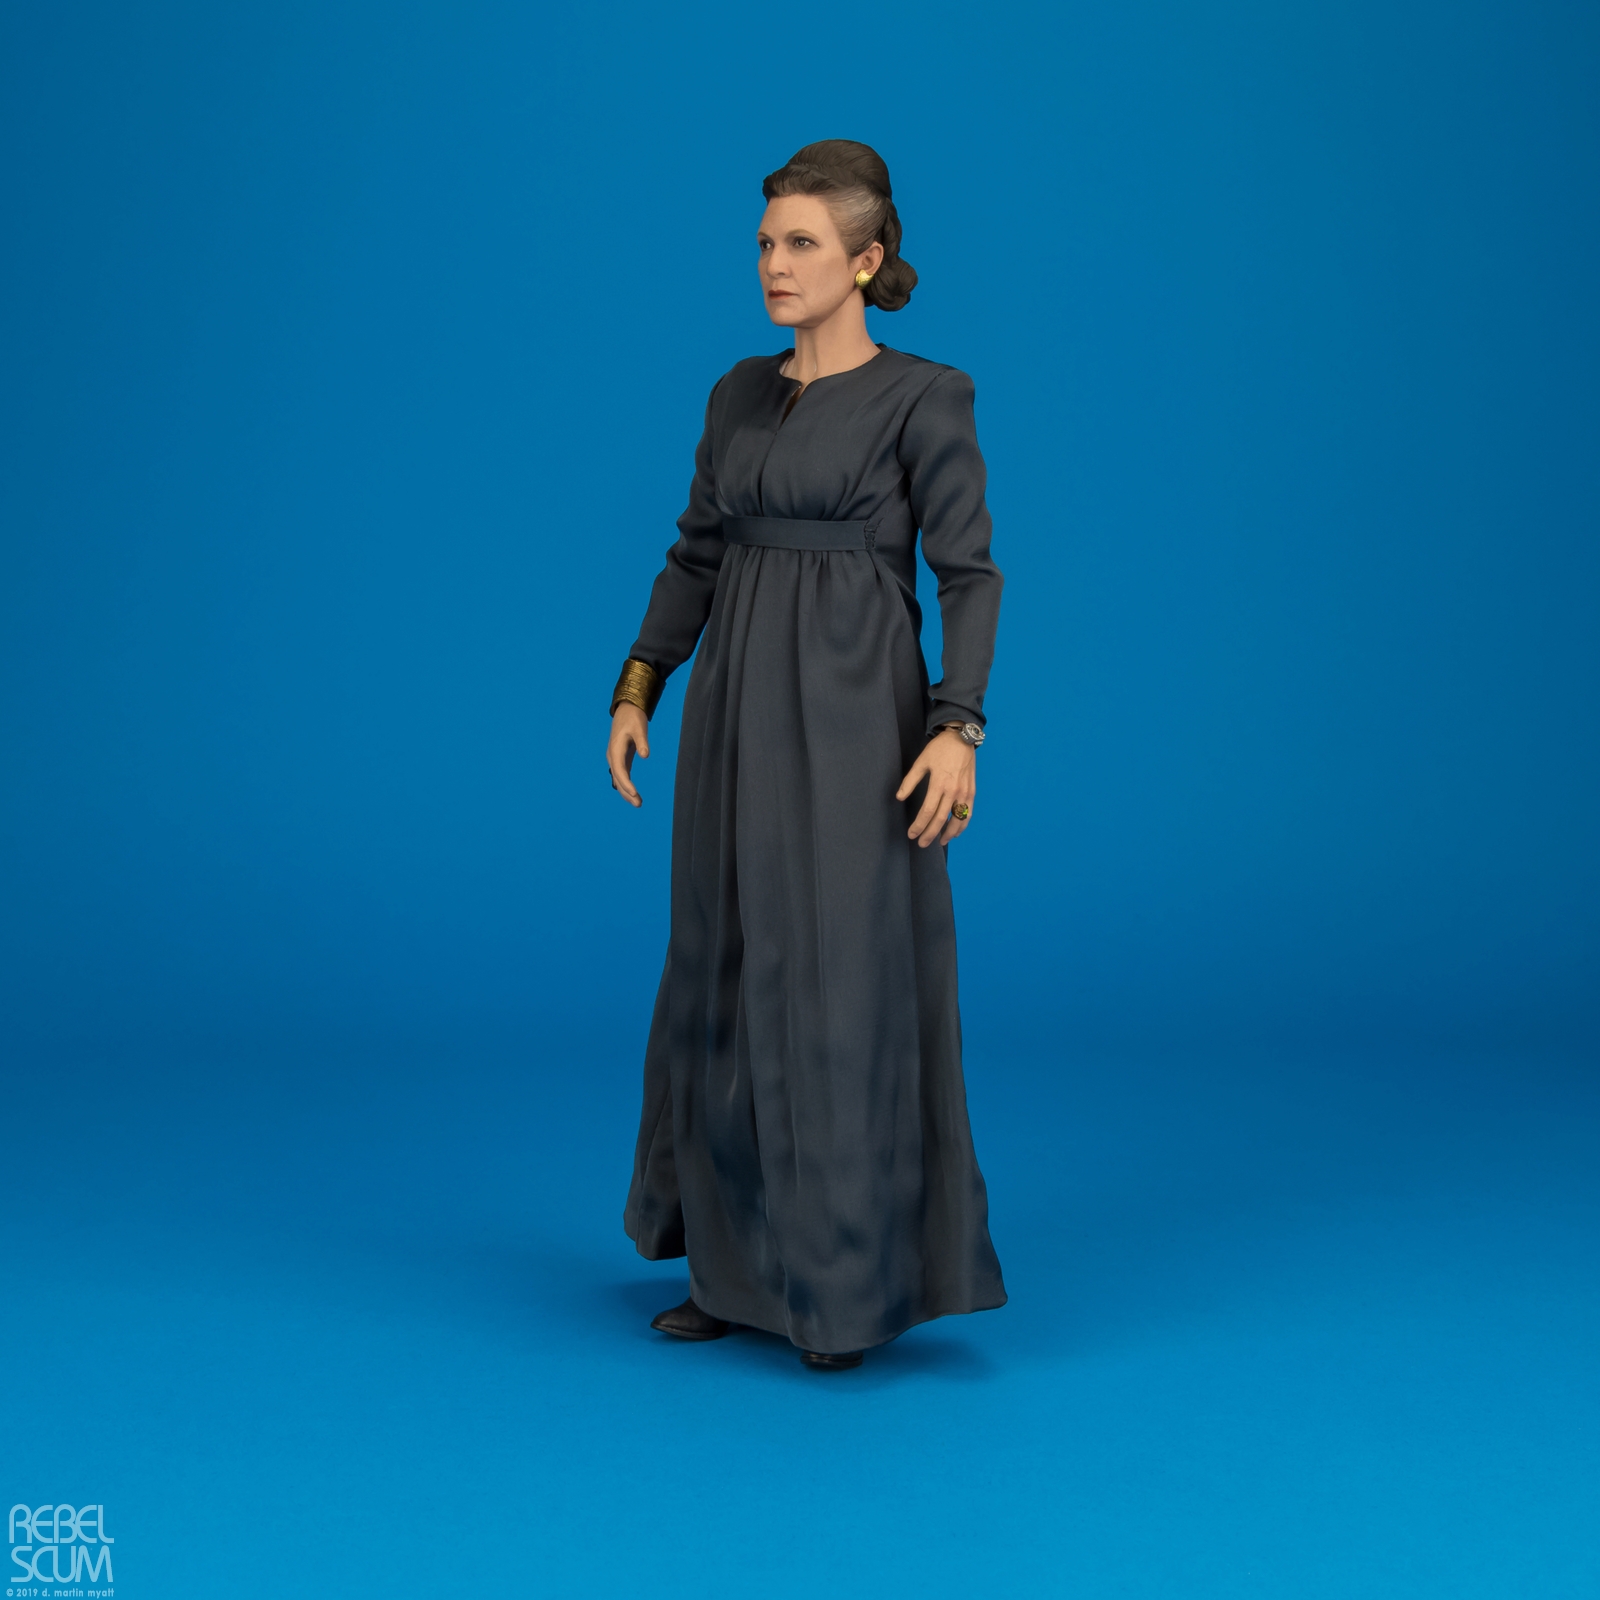 MMS459-Leia-Organa-The-Last-Jedi-Star-Wars-Hot-Toys-007.jpg